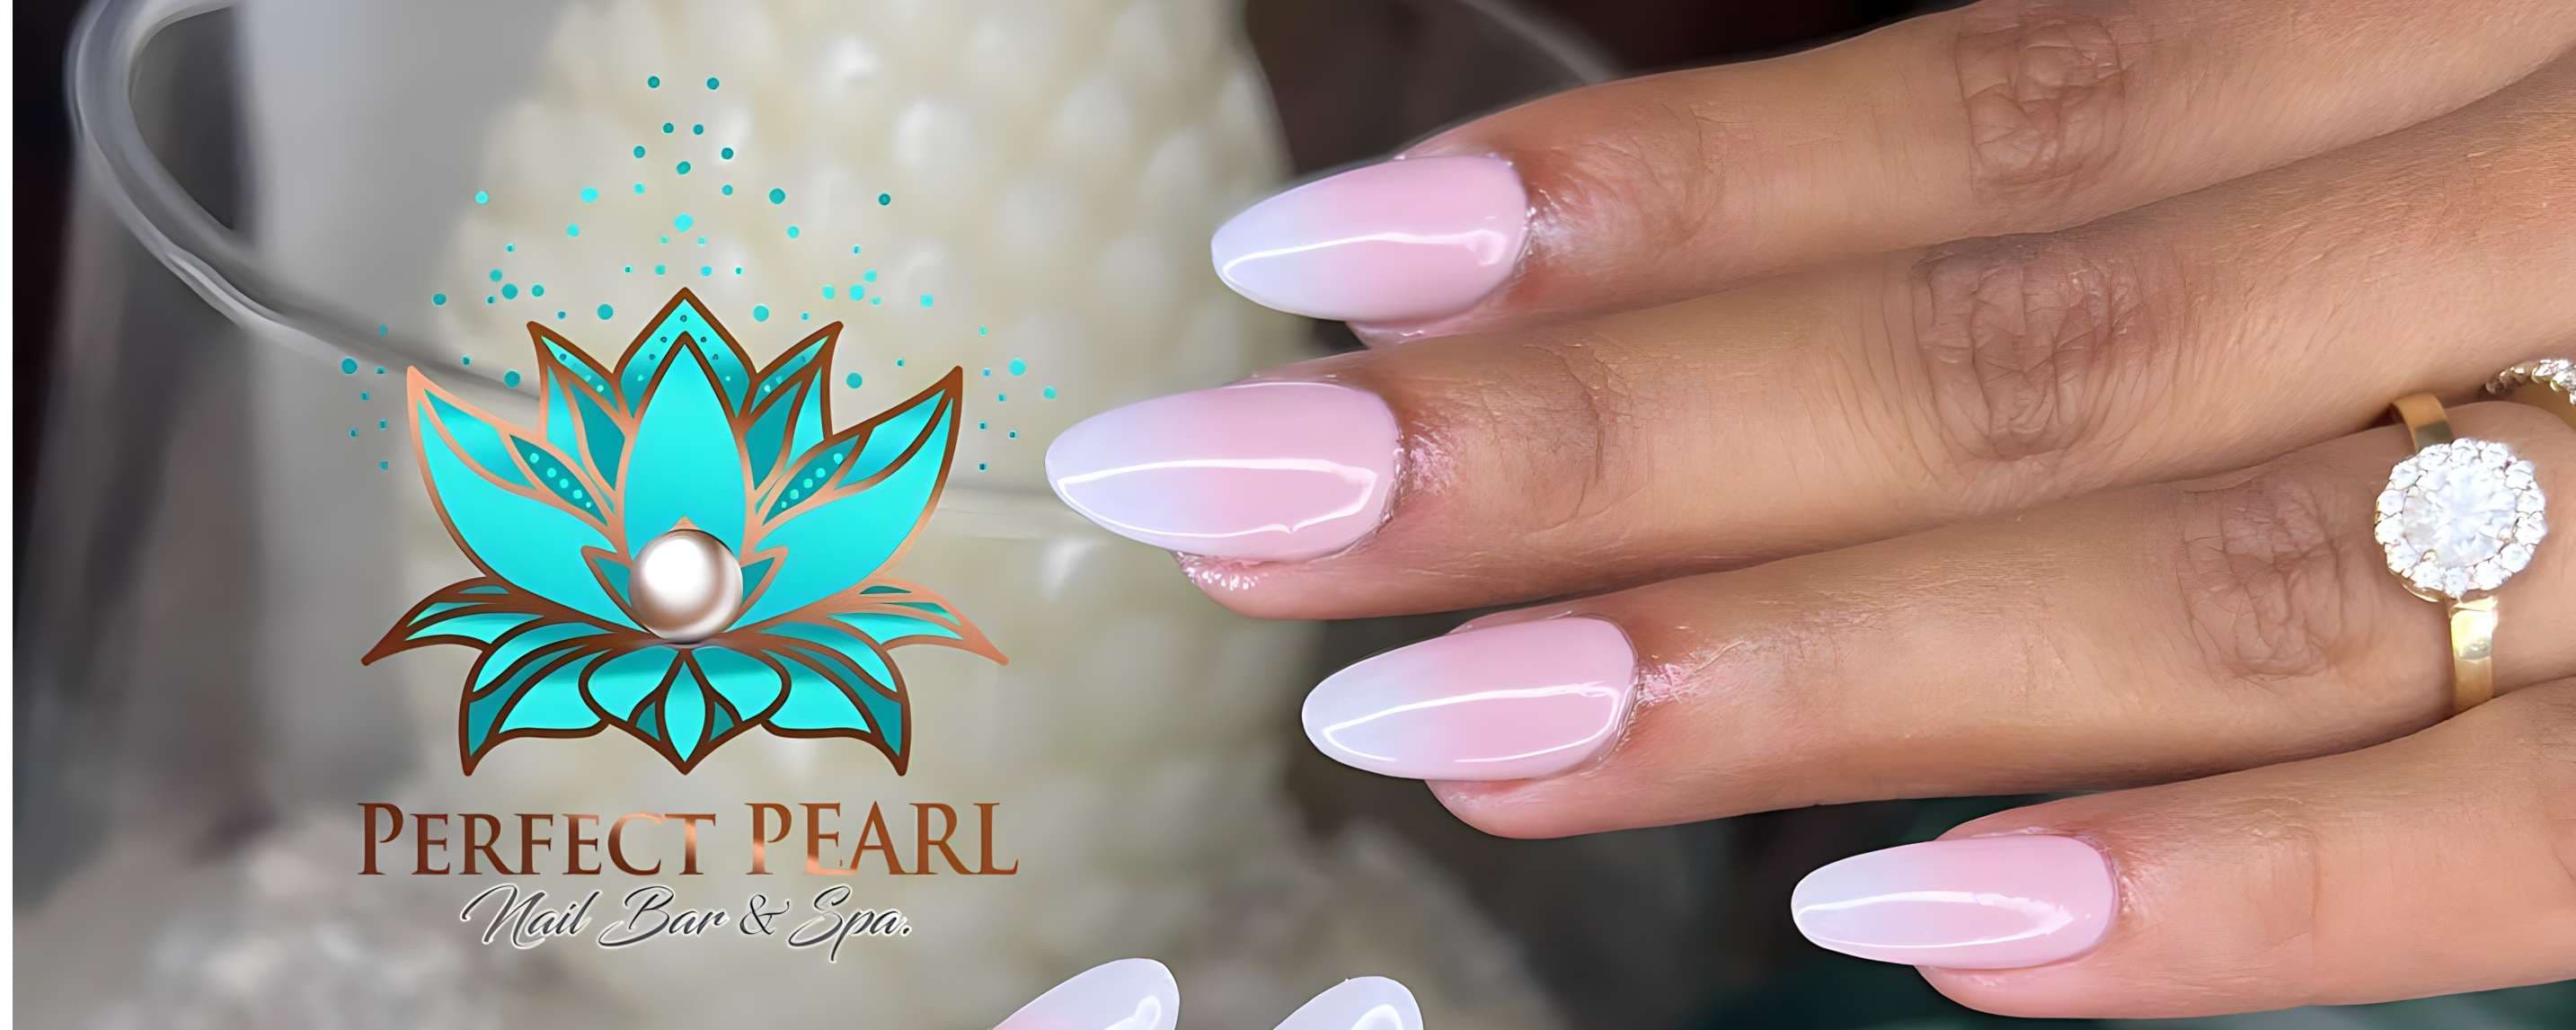 Perfect Pearl Nail Bar & Spa